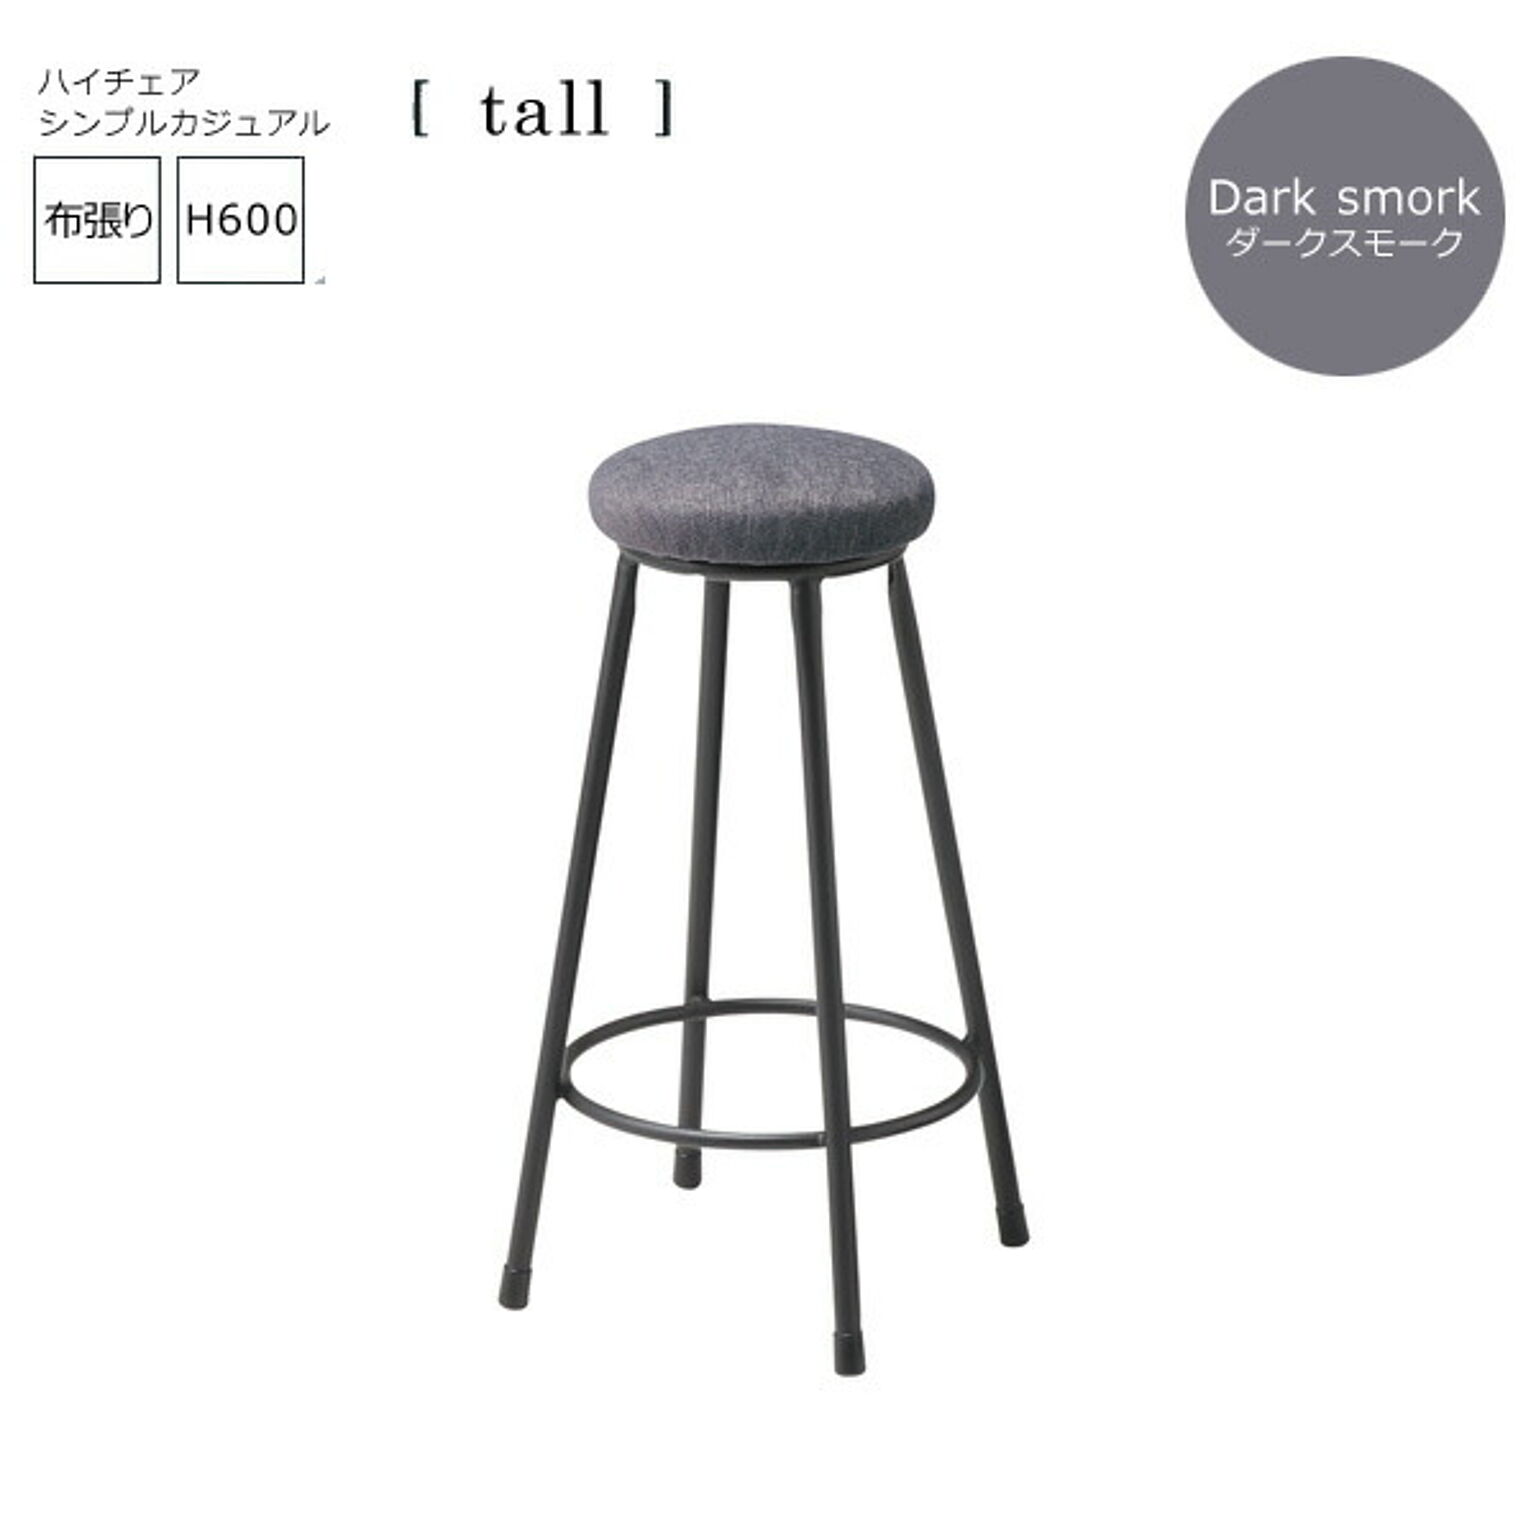 ダークスモーク： シンプルカジュアル バーチェアー布張【tall】 (アーバン) イス 椅子 いす ハイチェア カウンターチェア ハイスツール